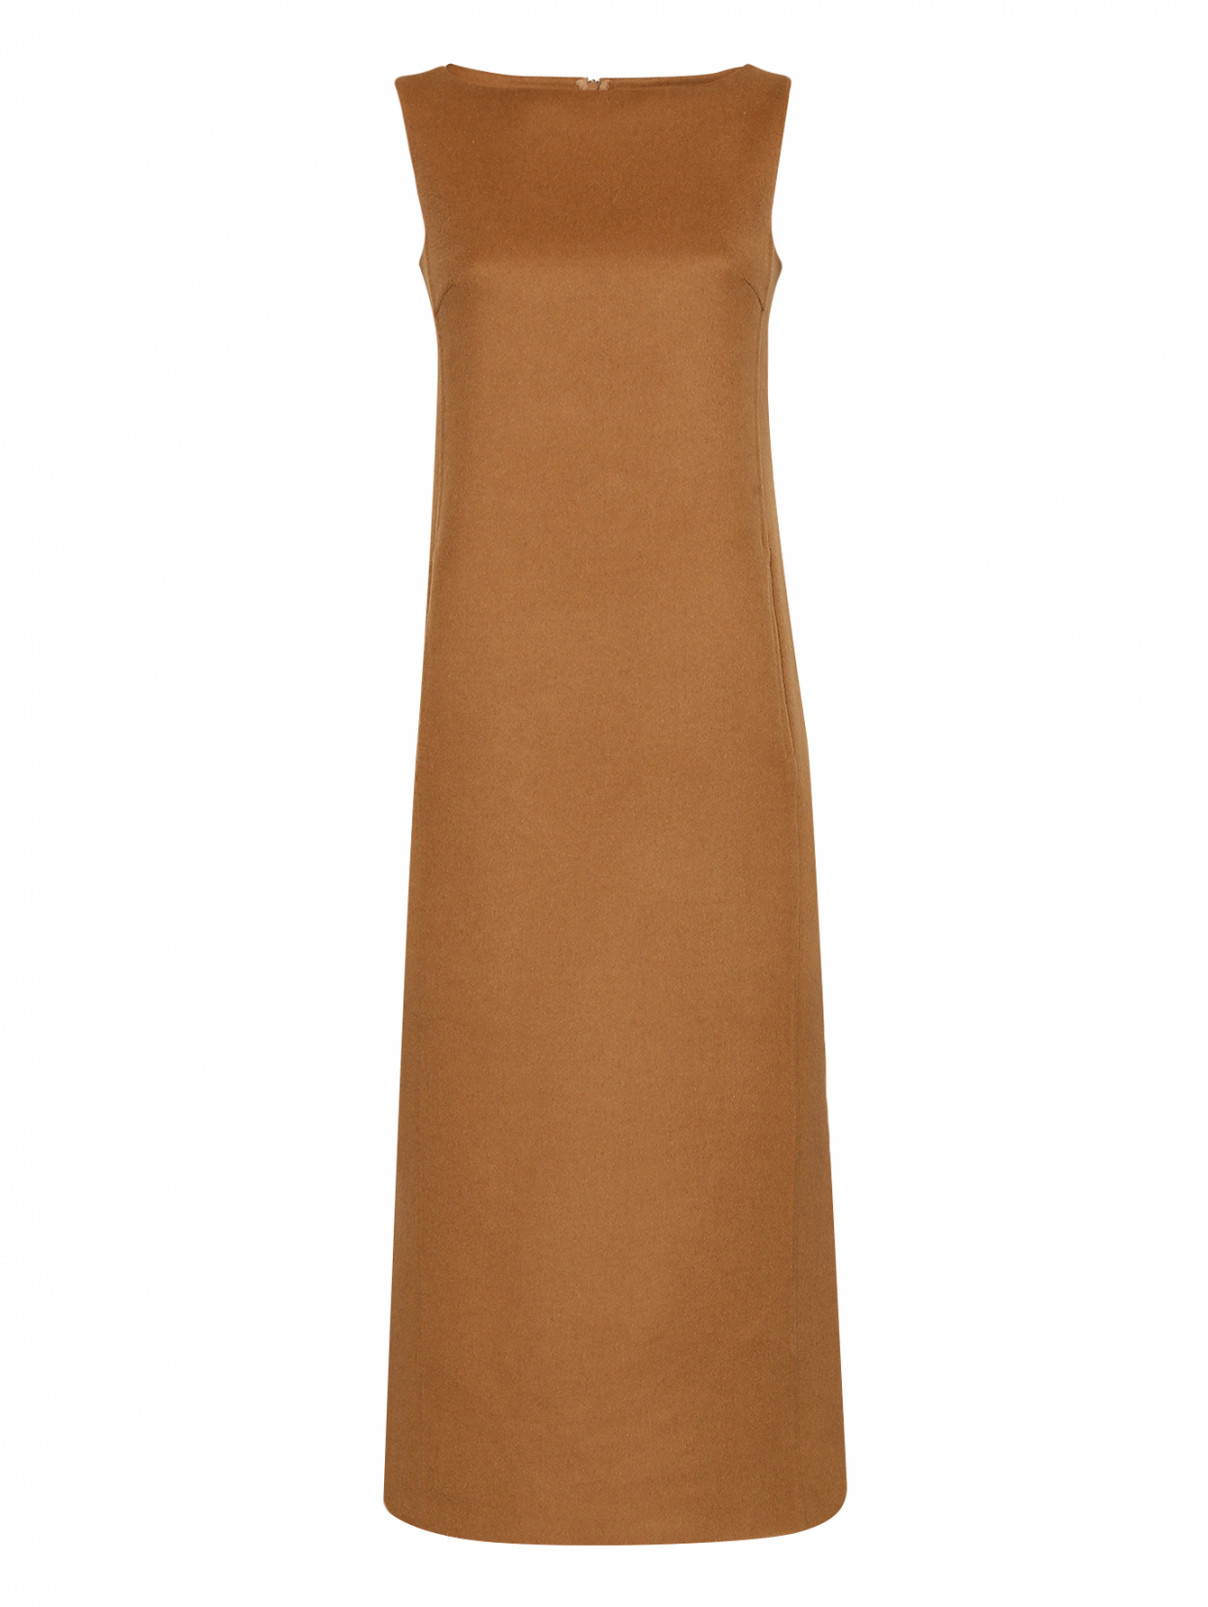 Платье из шерсти без рукавов с карманами Max Mara  –  Общий вид  – Цвет:  Коричневый